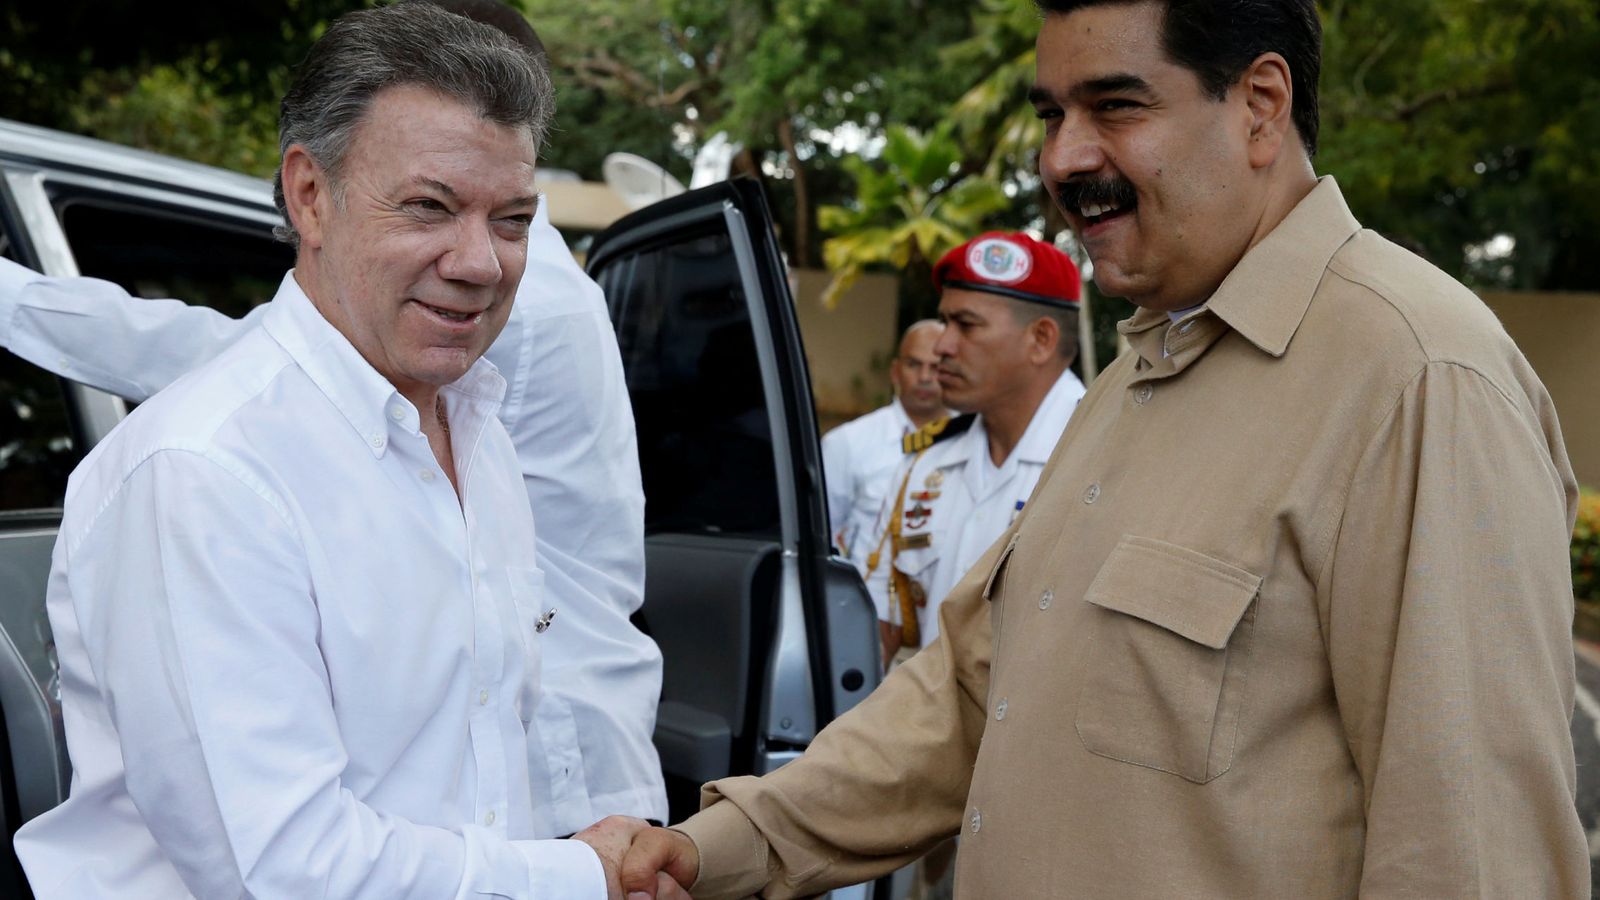 Foto: Los presidentes de Colombia y Venezuela, Juan Manuel Santos y Nicolás Maduro, sellan el acuerdo con un apretón de manos. (Reuters)